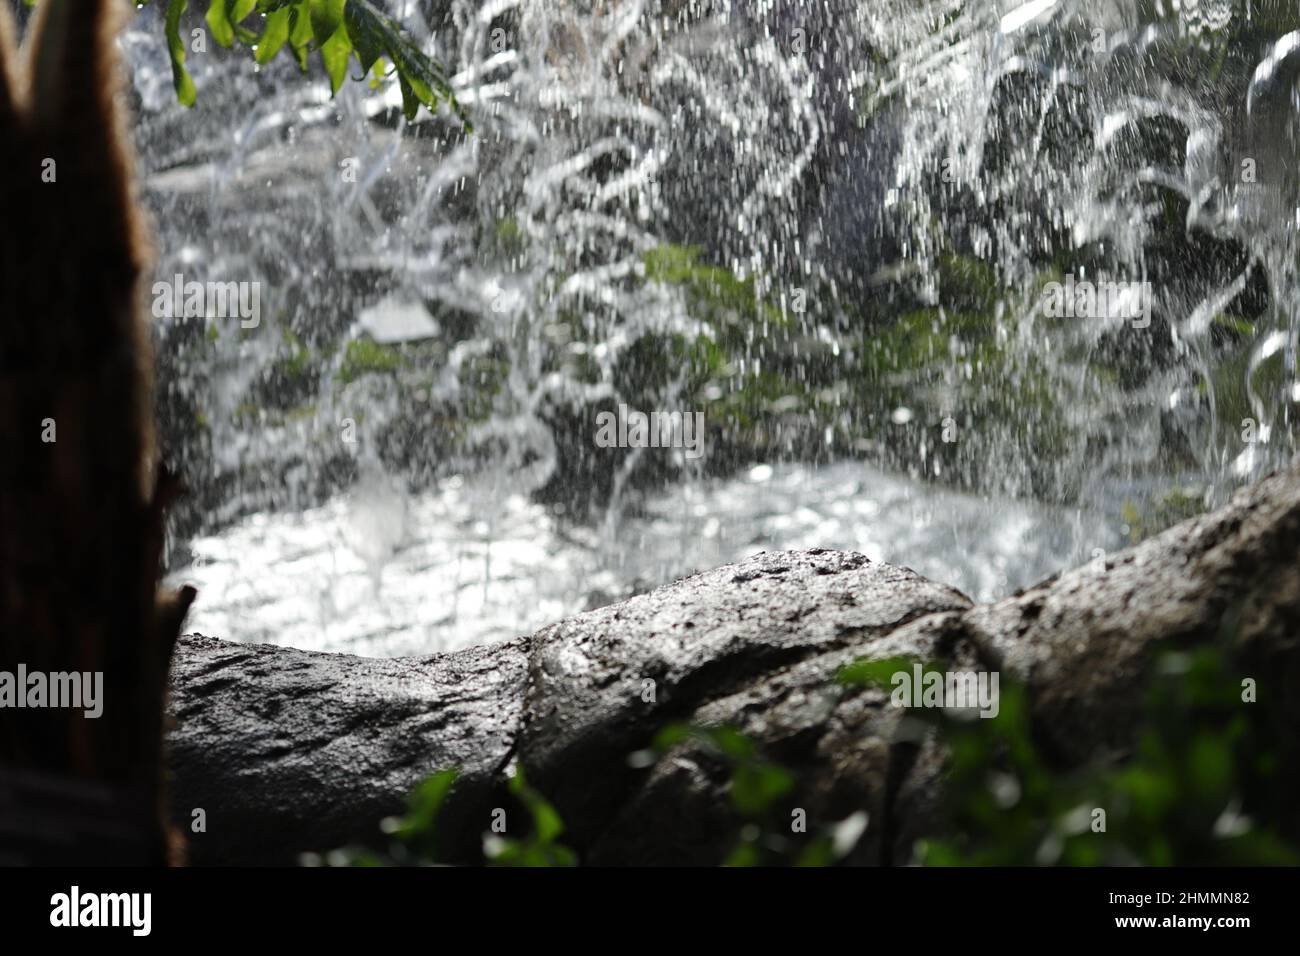 Cascate d'acqua, roccia umida vicino a cascate e vegetazione Foto Stock